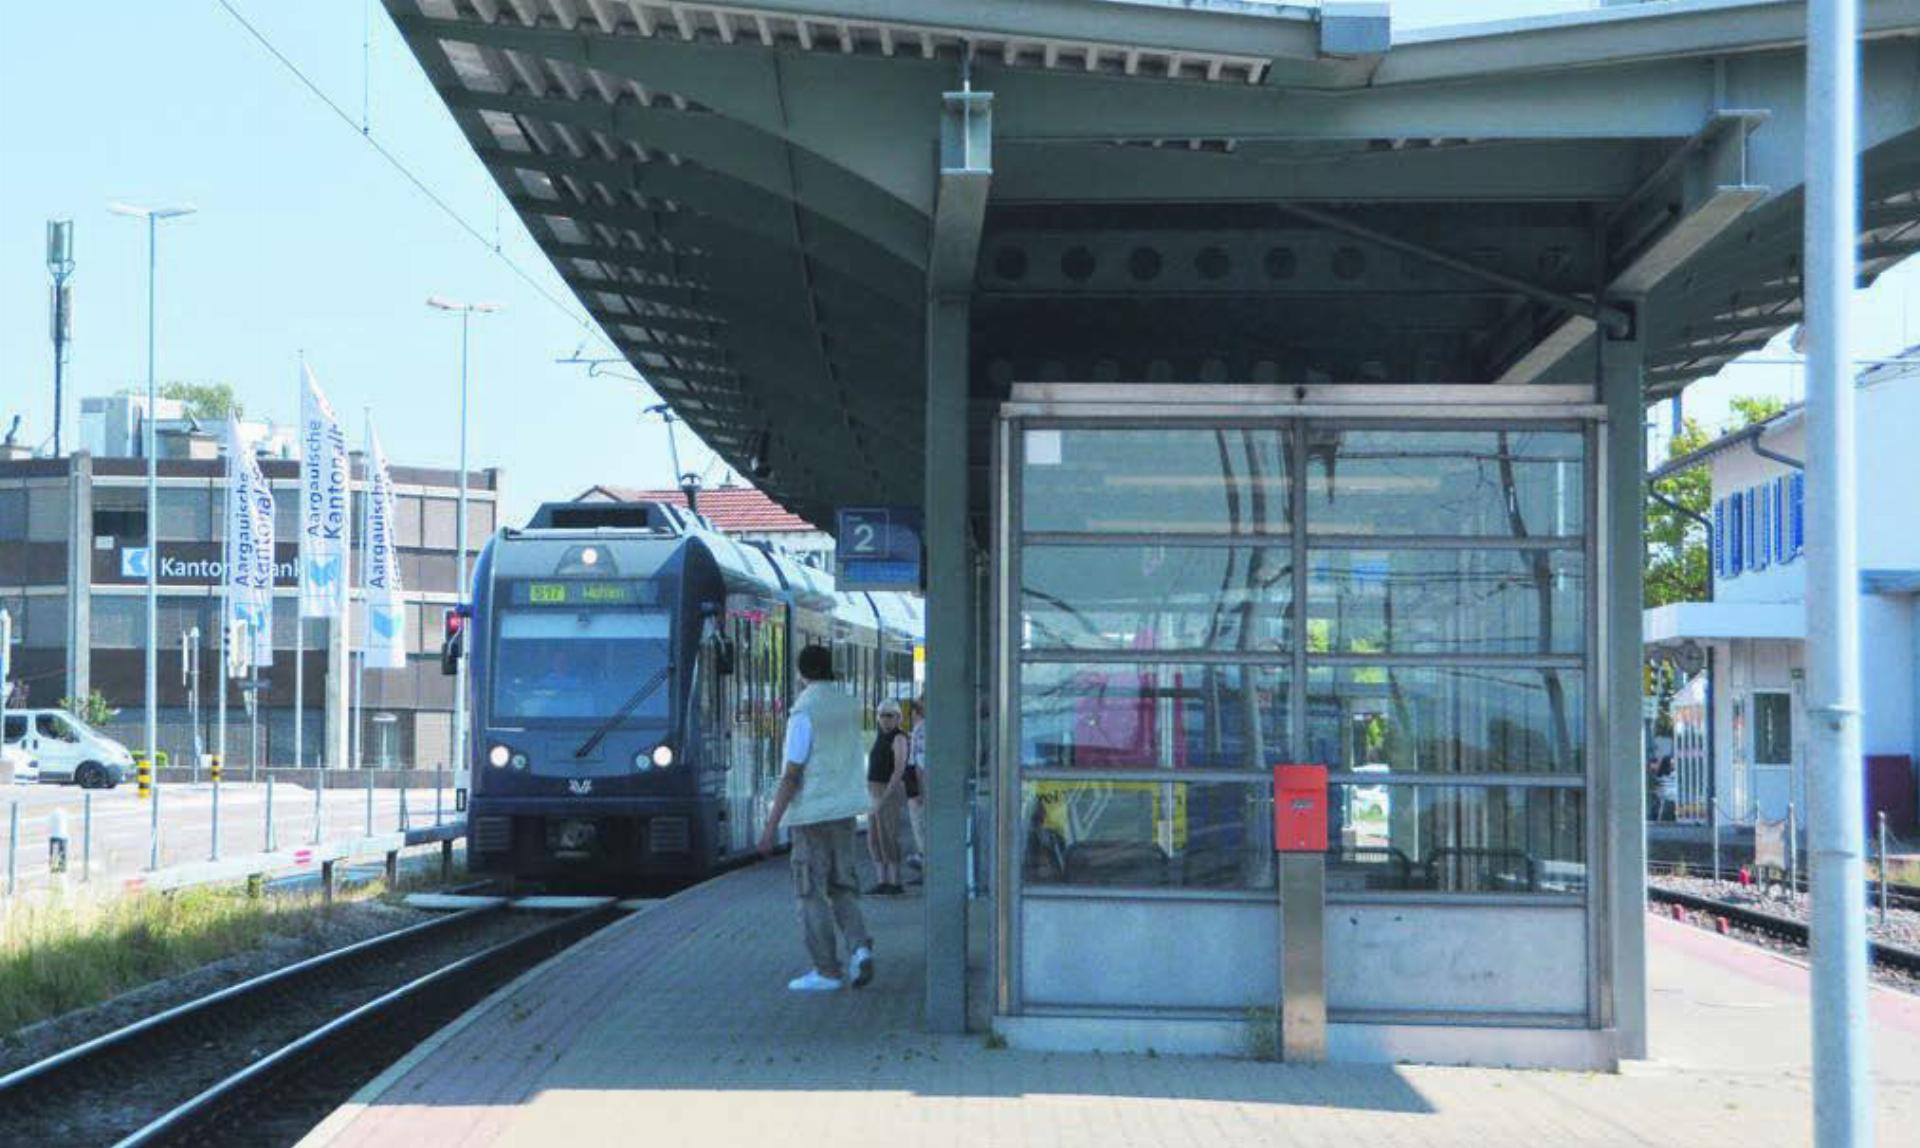 Der Bahnhof Berikon-Widen ist heute nur von einer Seite her barrierefrei. Bilder: Roger Wetli